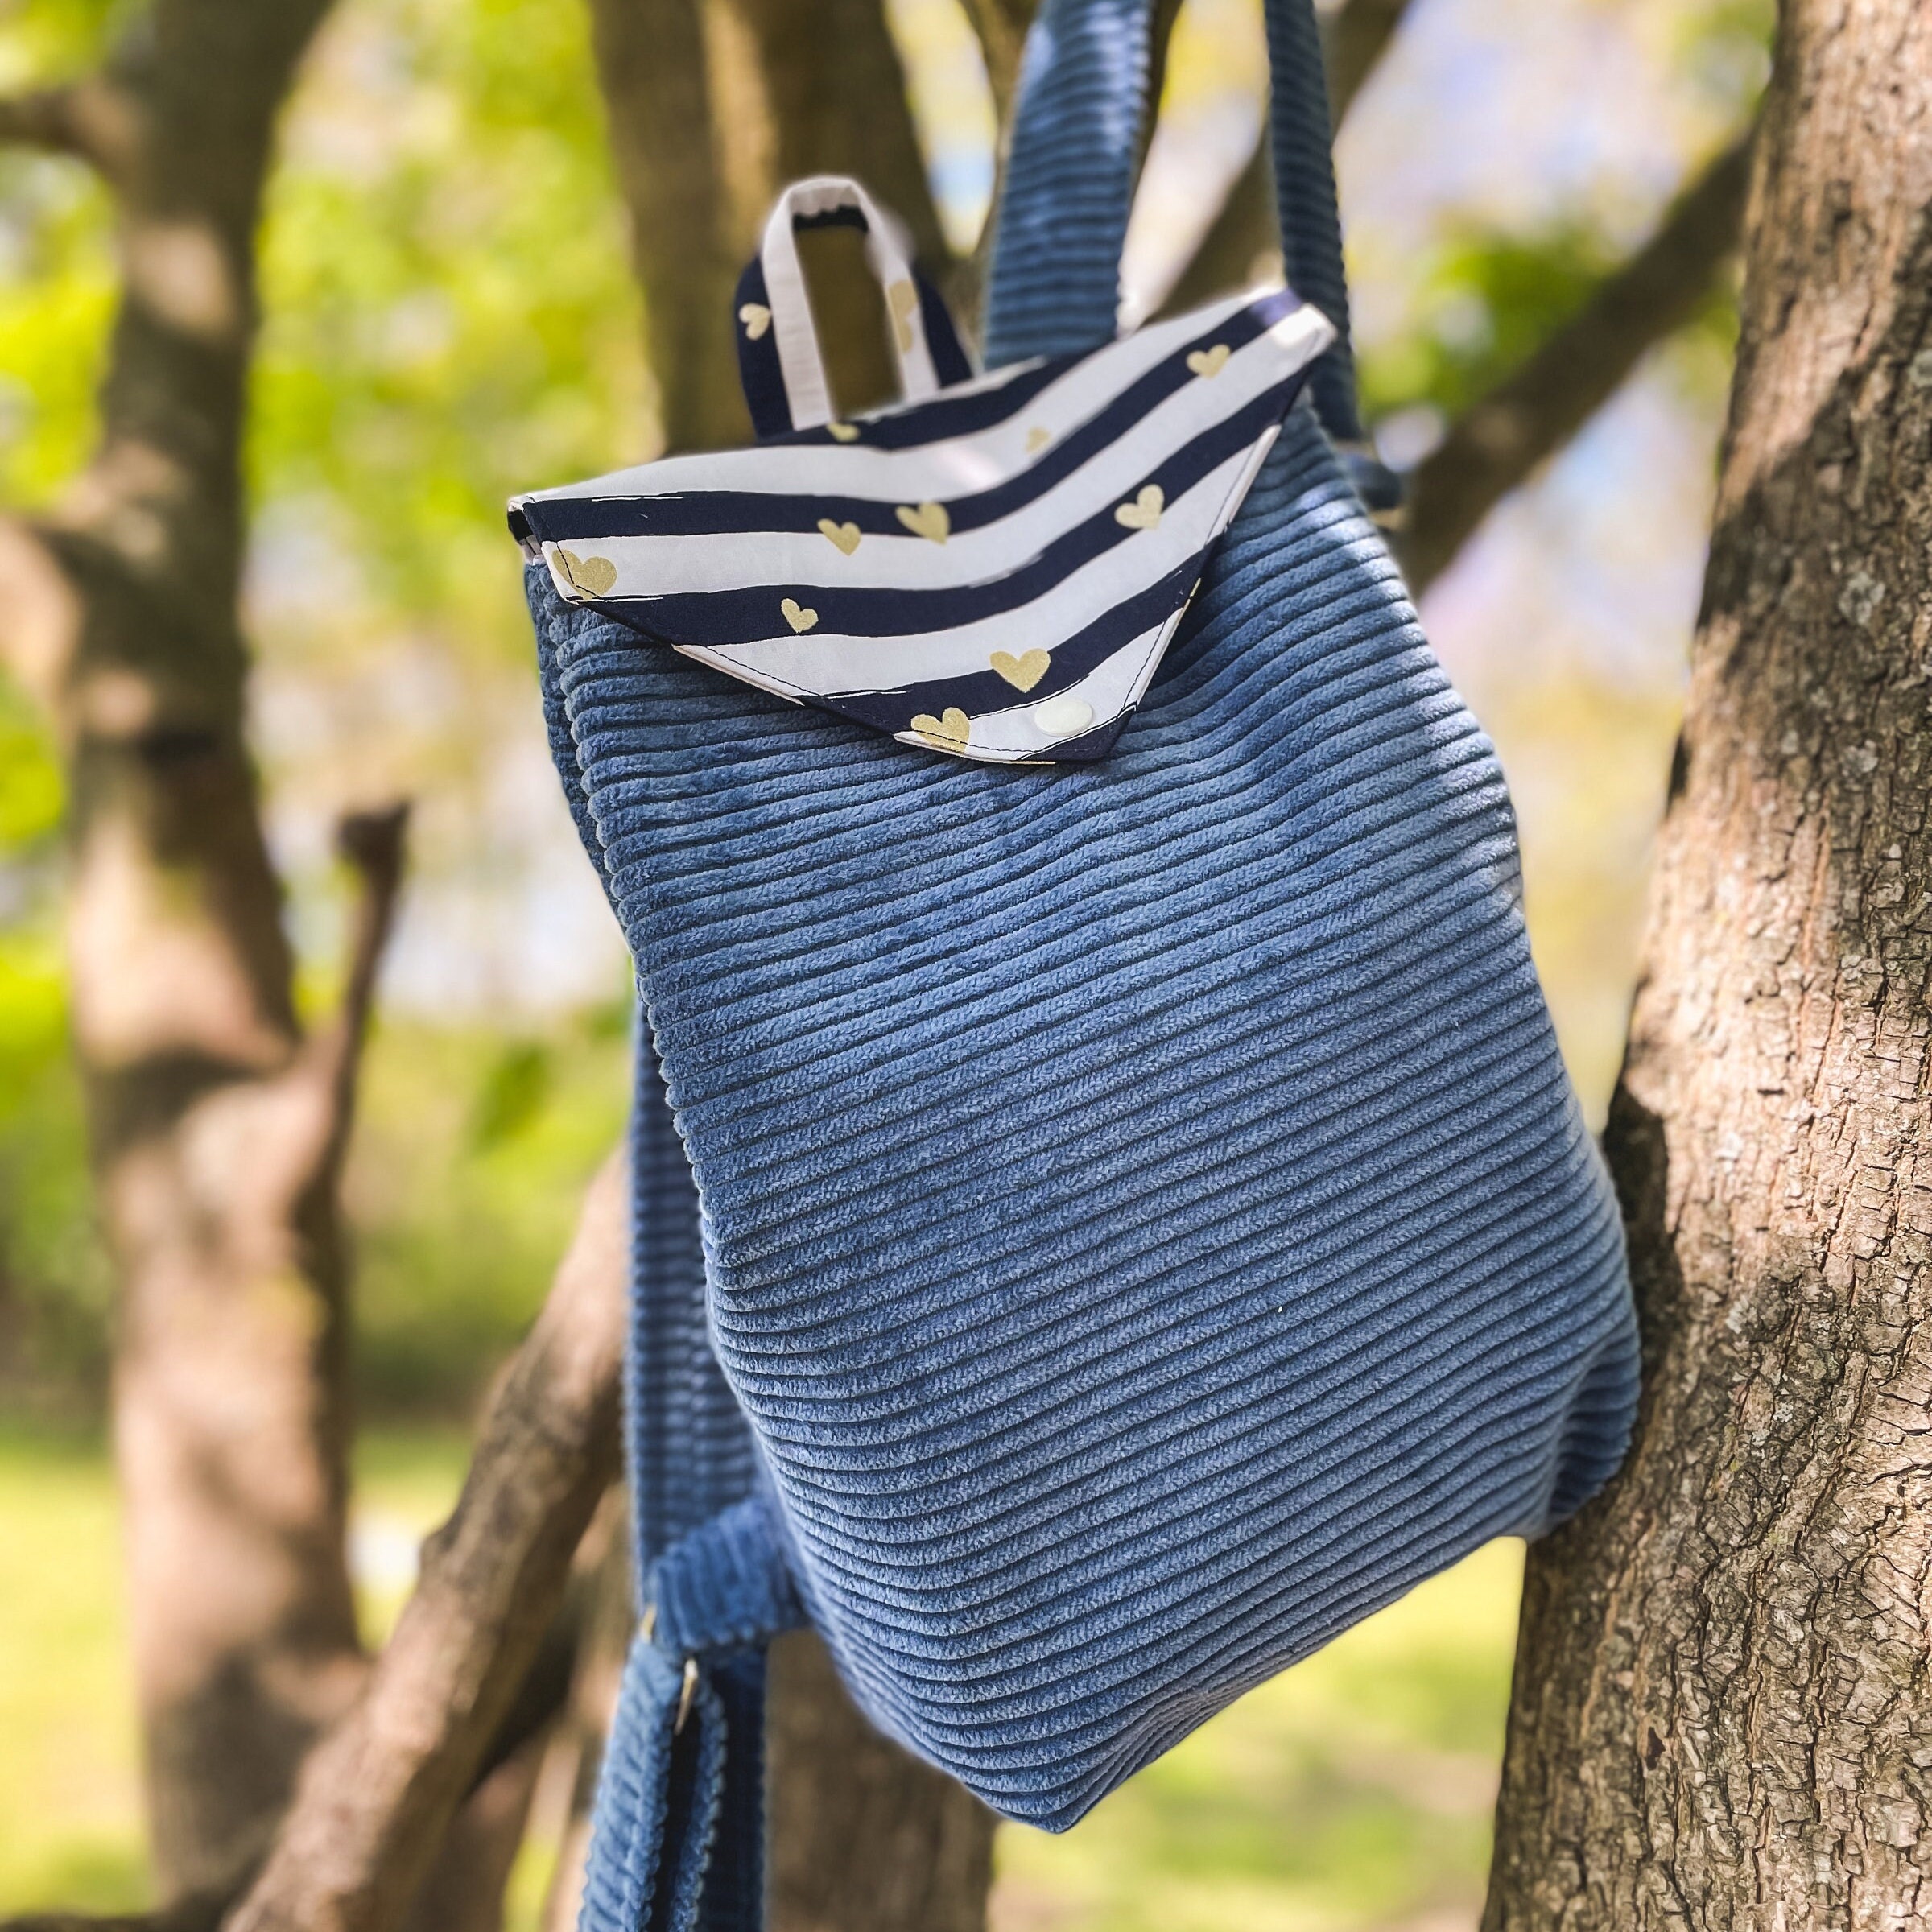 Sangle en polyester 48mm type ceinture de sécurité sacs bagage chaise anse  bandoulière couture transat créations fait main bleu marine - Un grand  marché